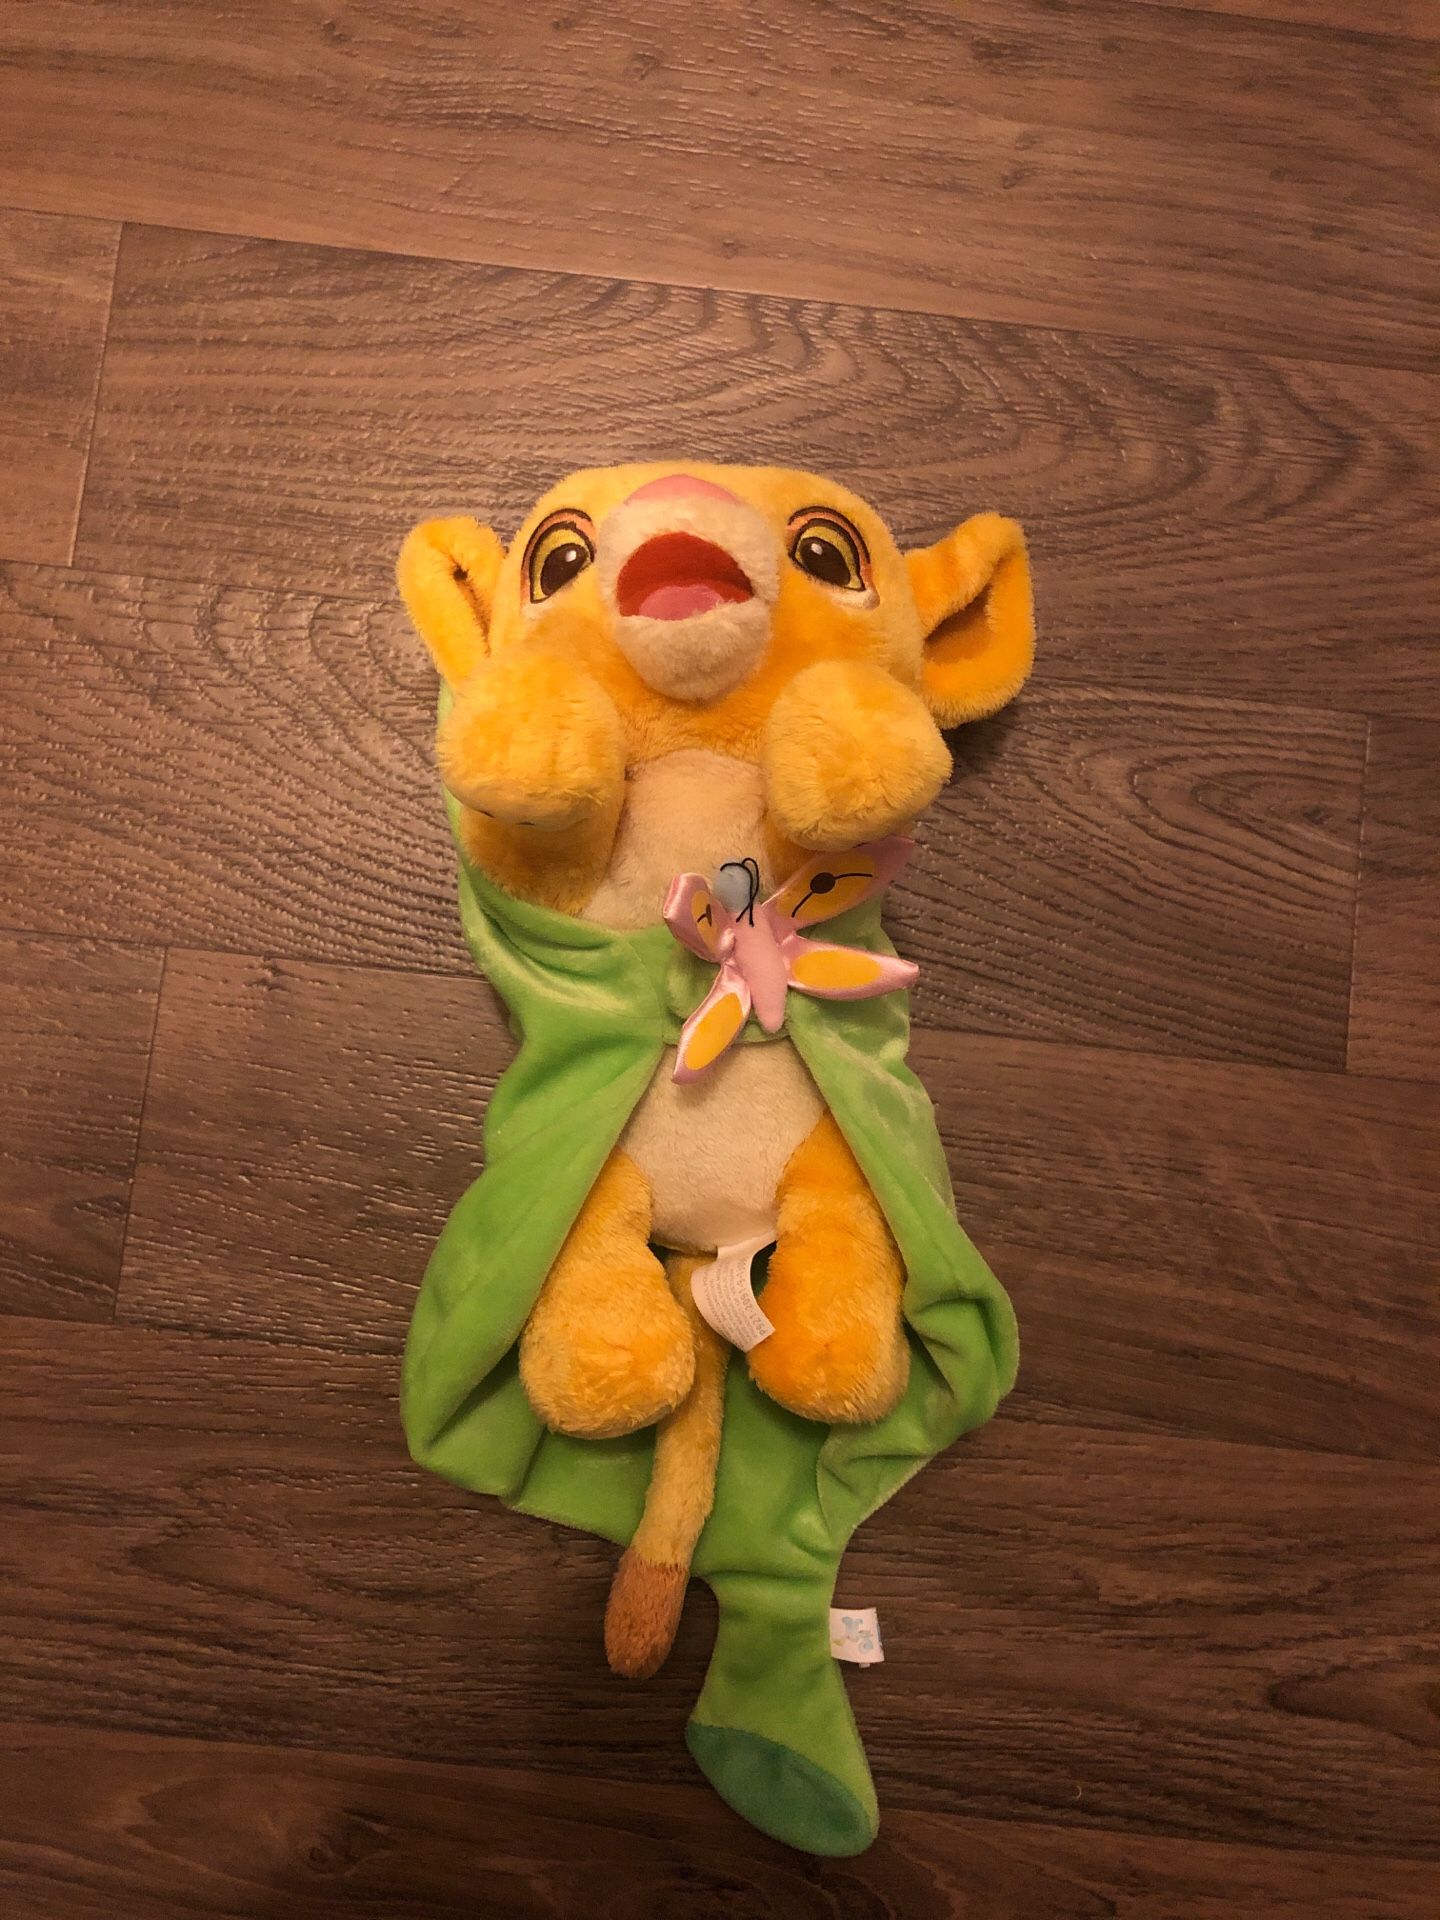 Baby Simba stuffed toy